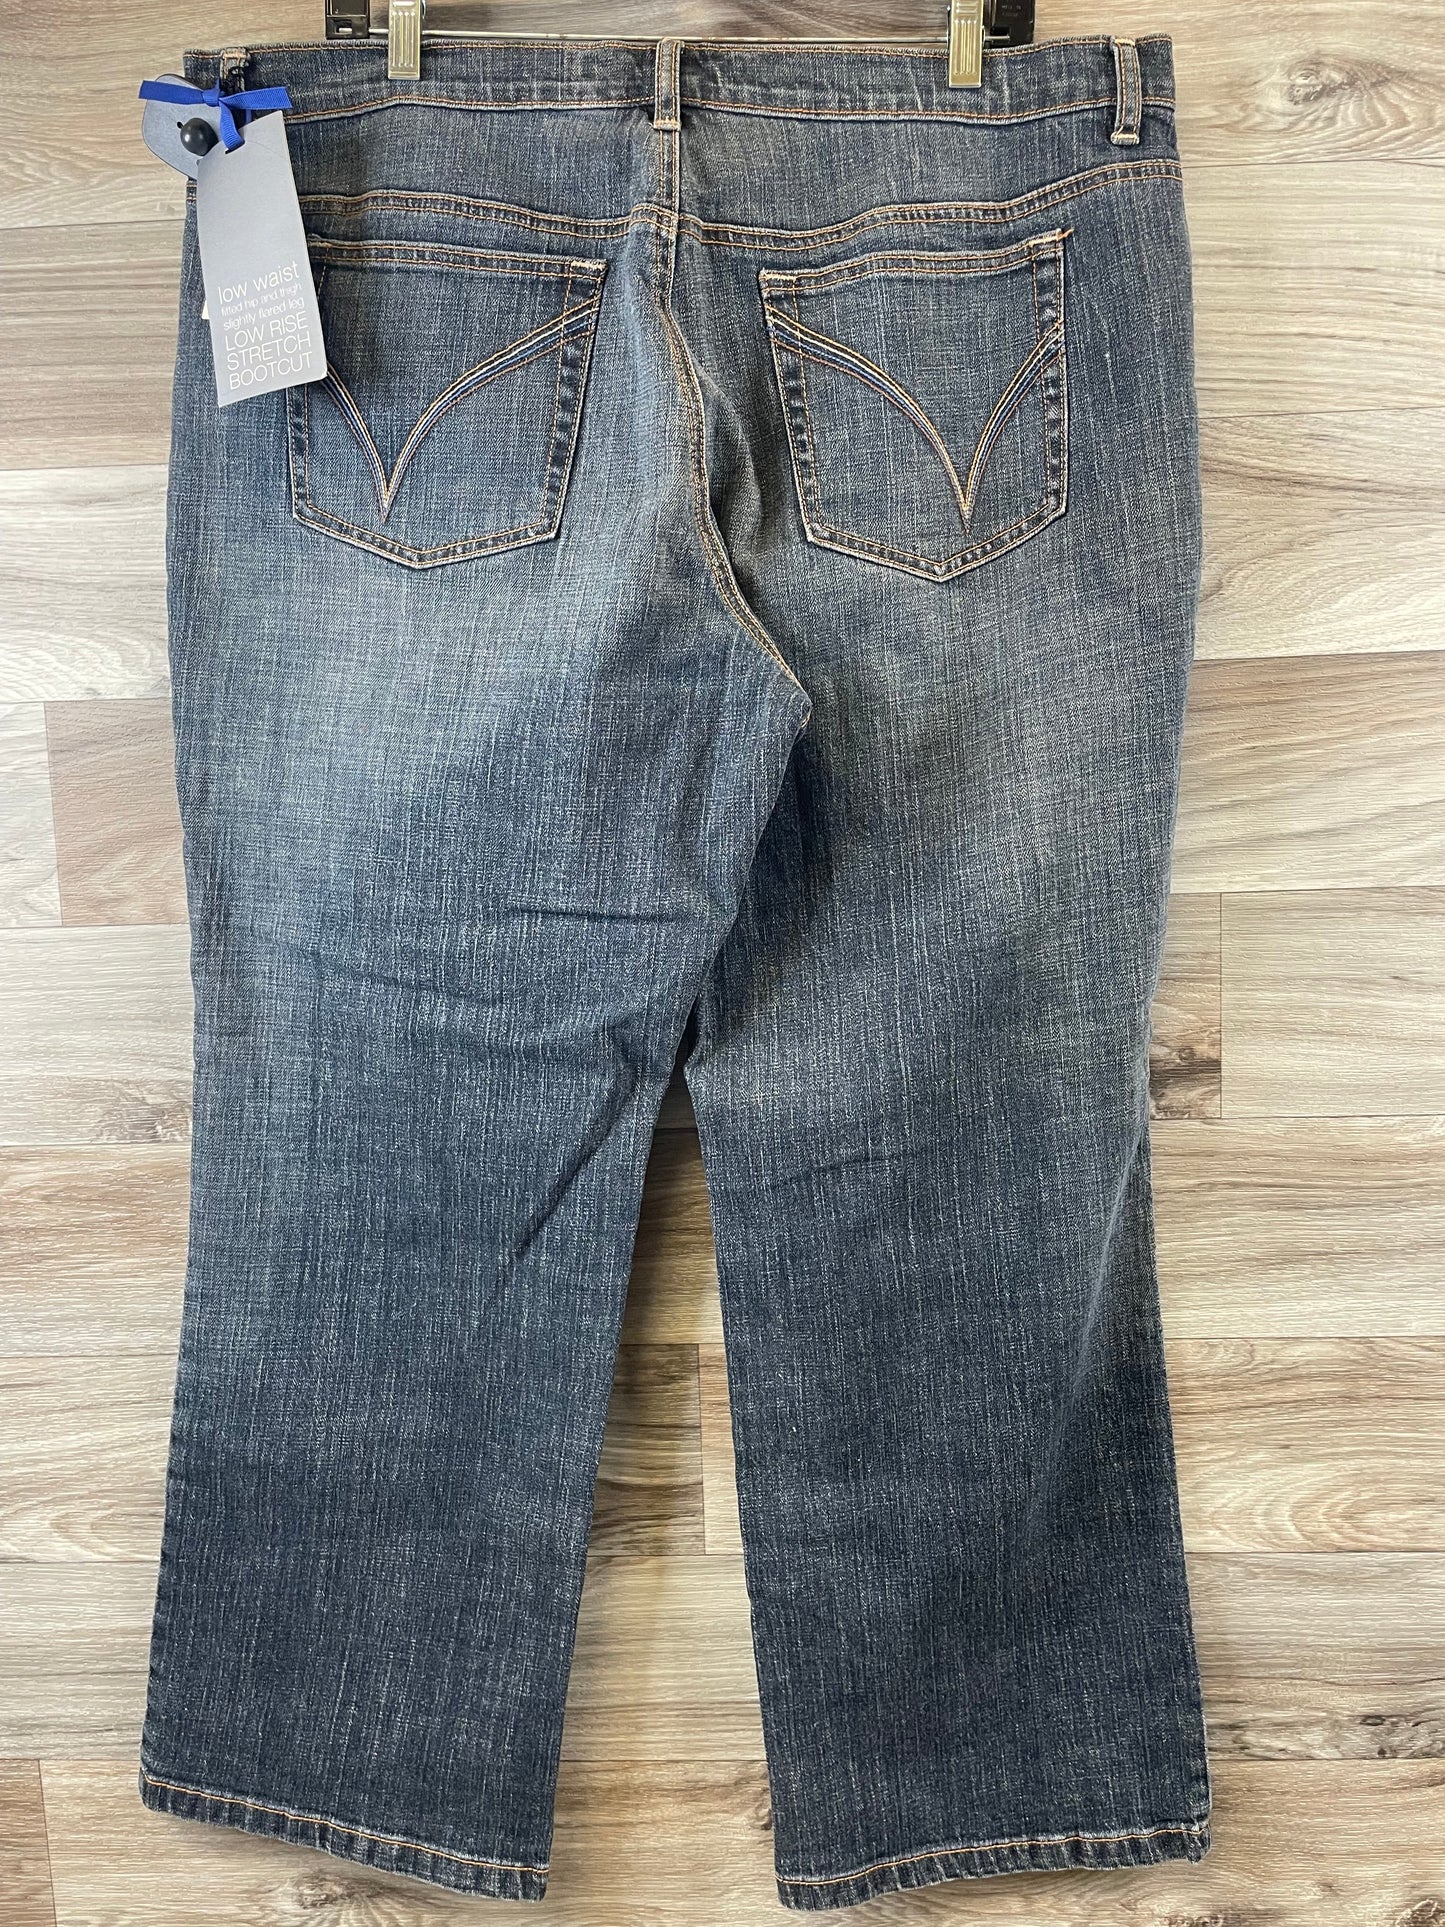 Jeans Boot Cut By Venezia  Size: 20